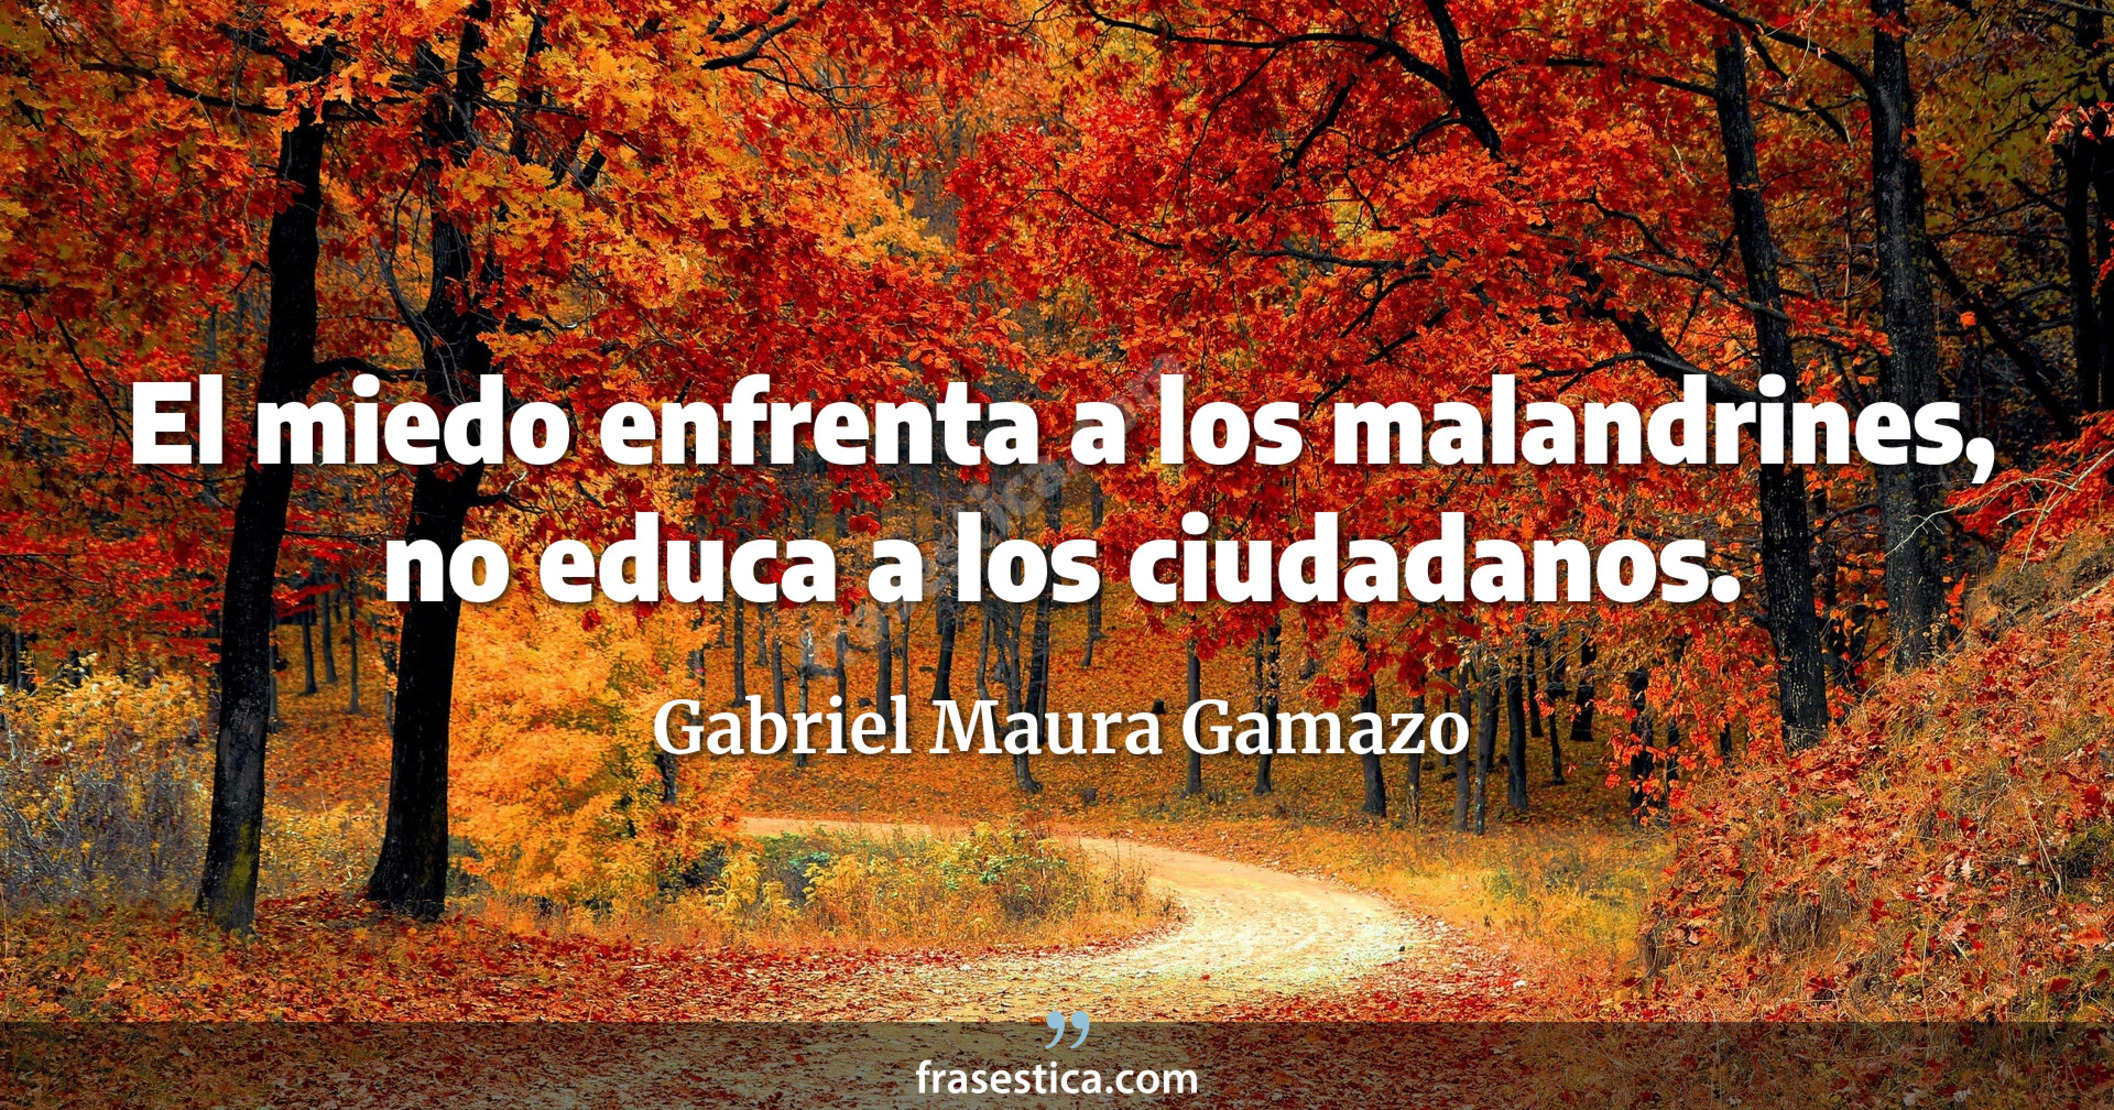 El miedo enfrenta a los malandrines, no educa a los ciudadanos. - Gabriel Maura Gamazo